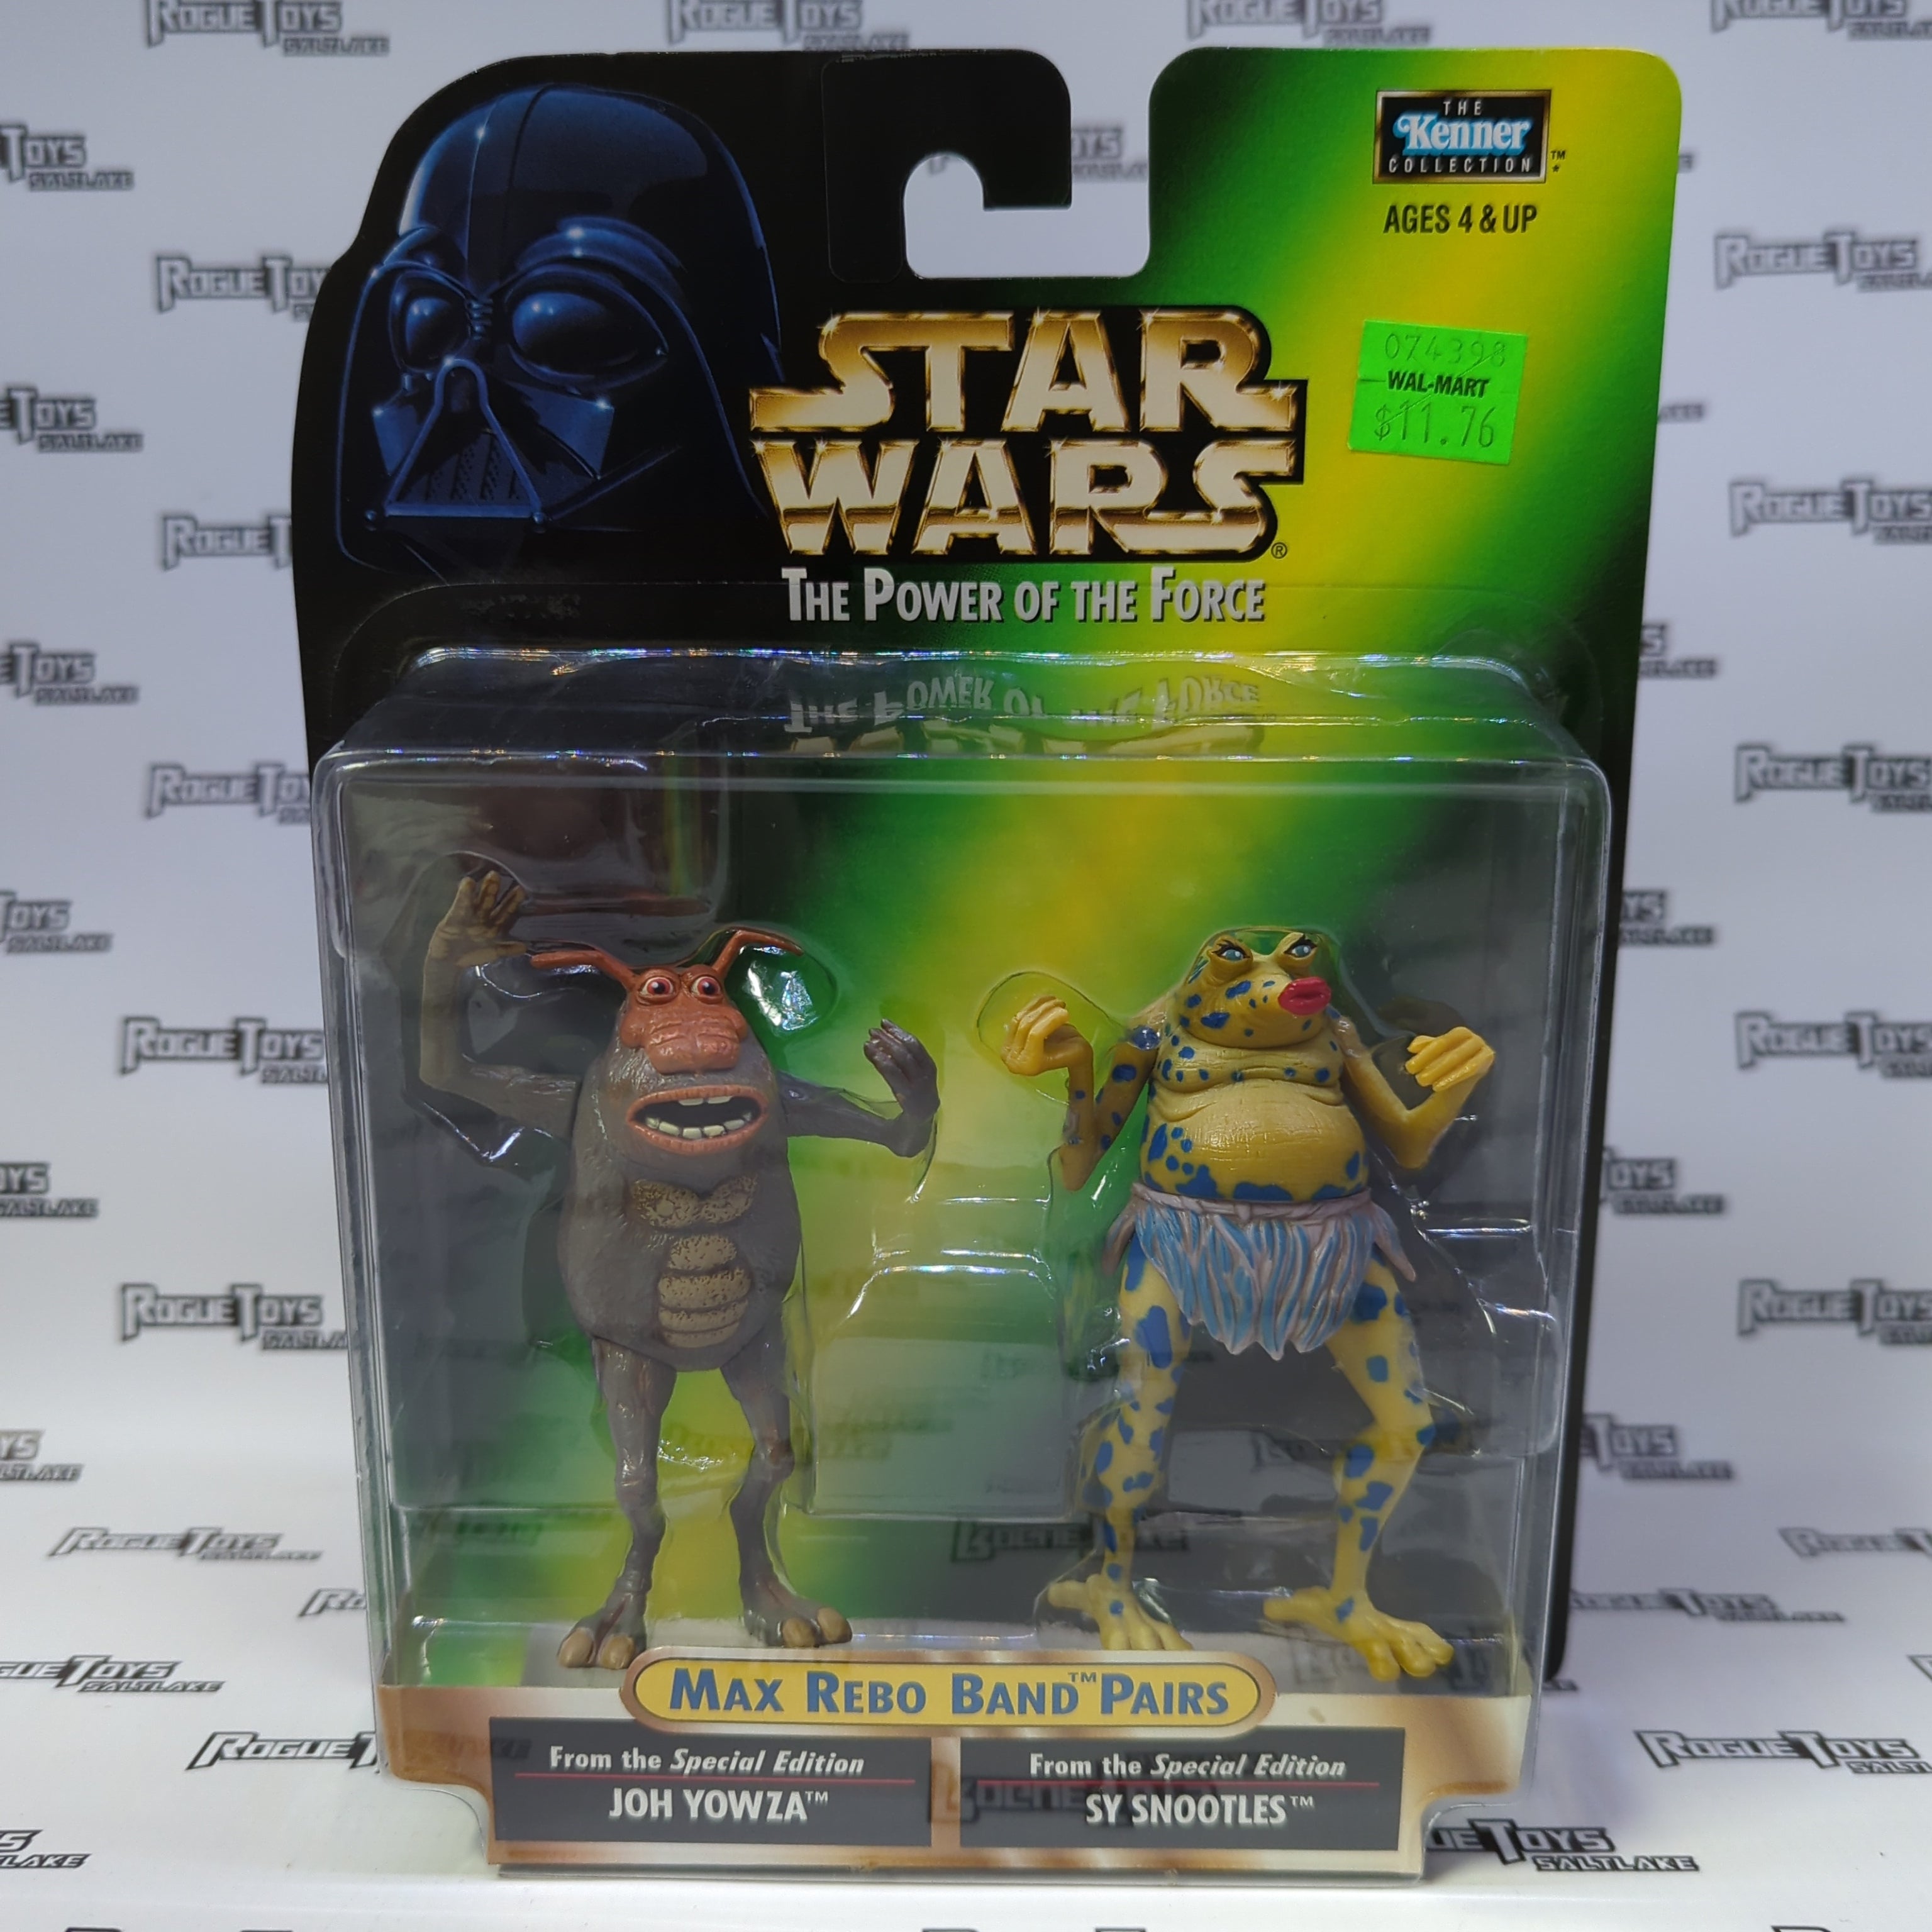 Hasbro Star Wars The Power of the Force Max Rebo Band Pairs Joh Yowza & Sy Snootles